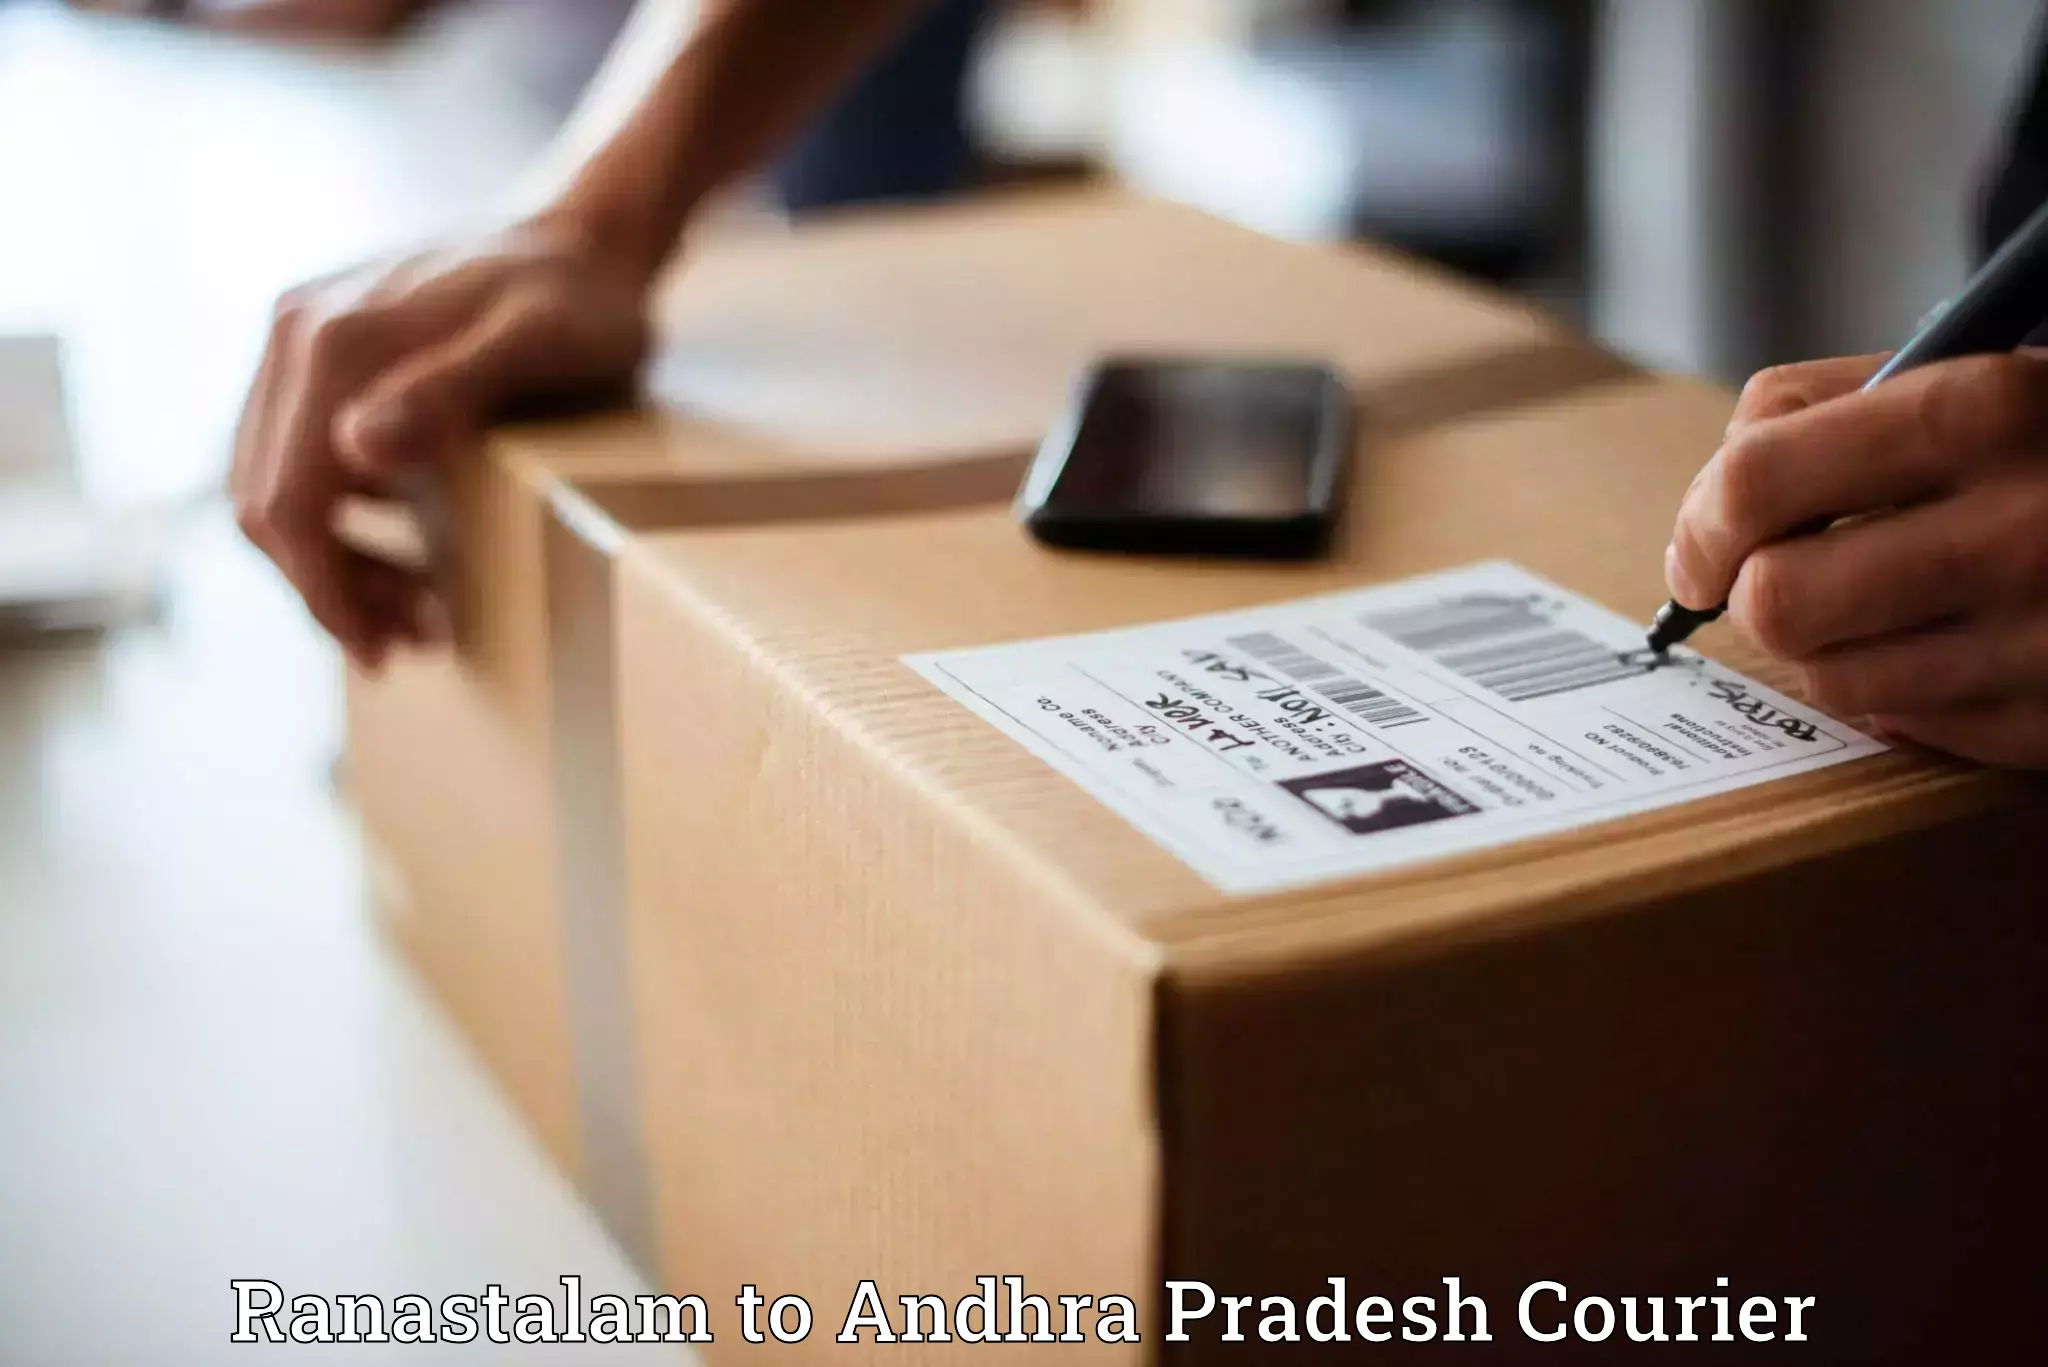 Custom courier packaging Ranastalam to Chilakaluripet